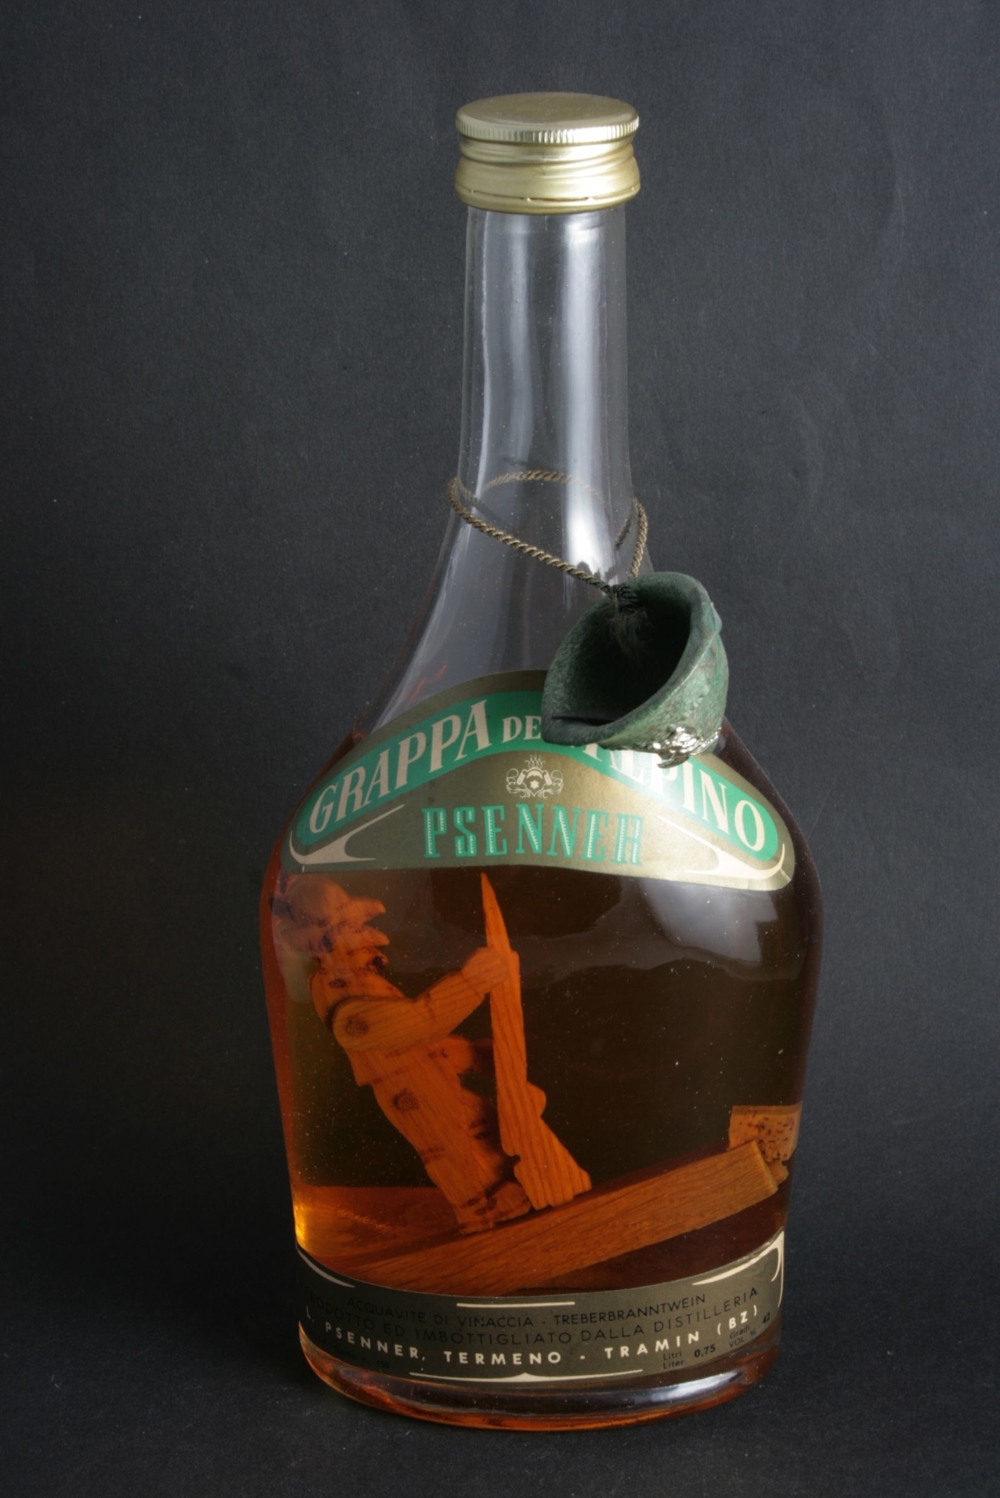 Sammlungsauflösung von außergewöhnlichen "Flaschen" Holzfigur in der Flasche